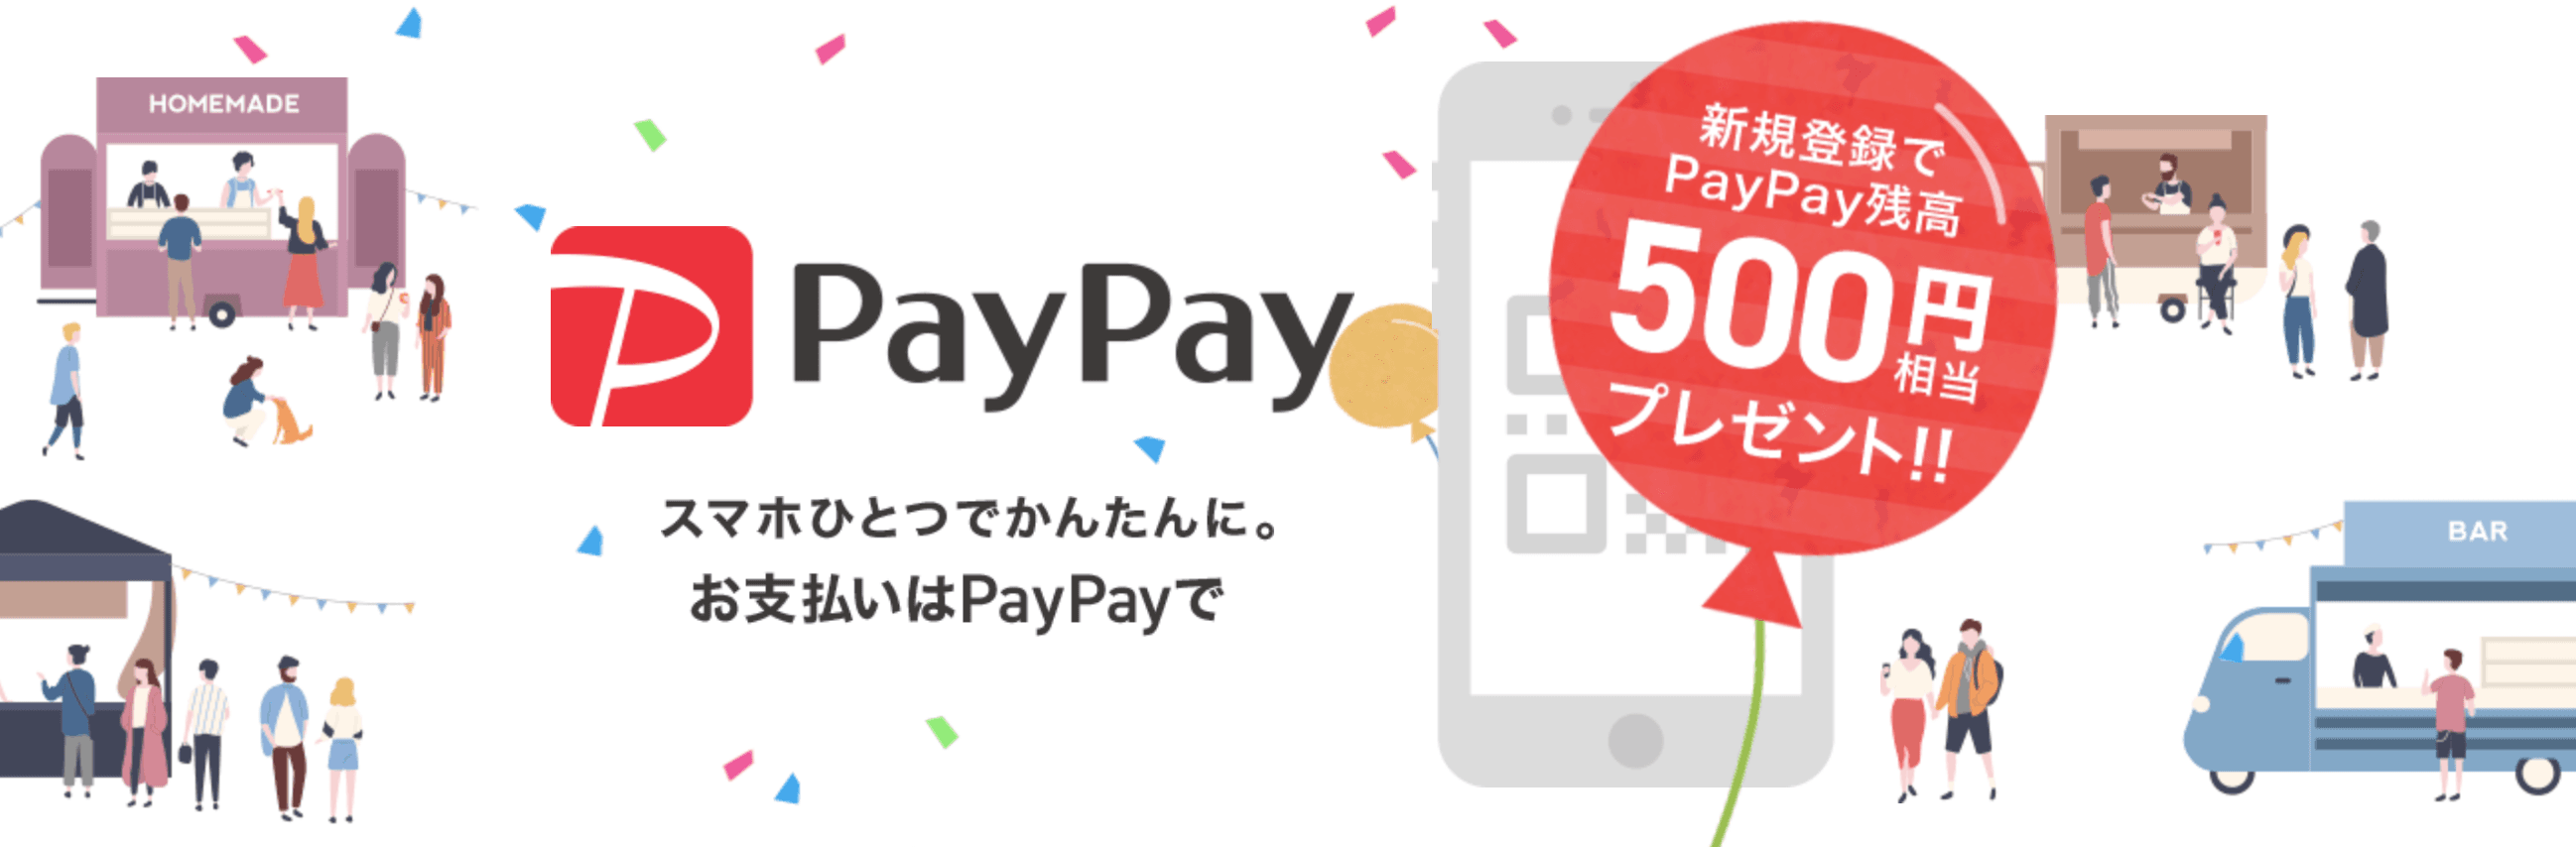 Paypay ペイペイアプリ第2弾100億円キャンペーンはyahoo Japanカードがお得 エンジニアライブログ